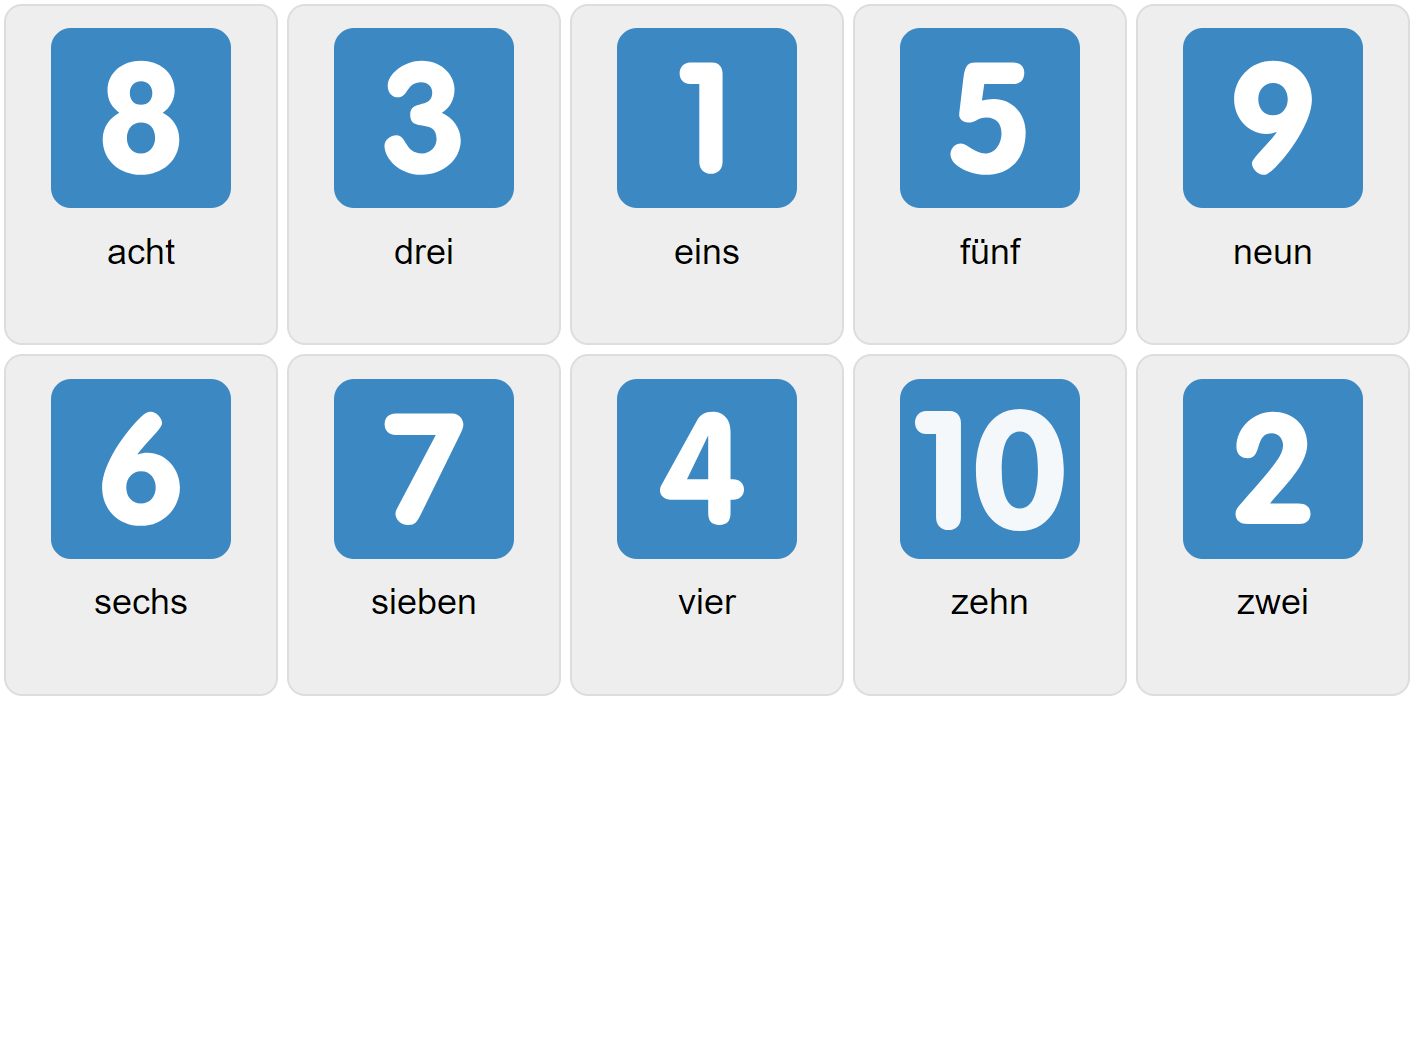 Цифры 1-10 на немецком языке